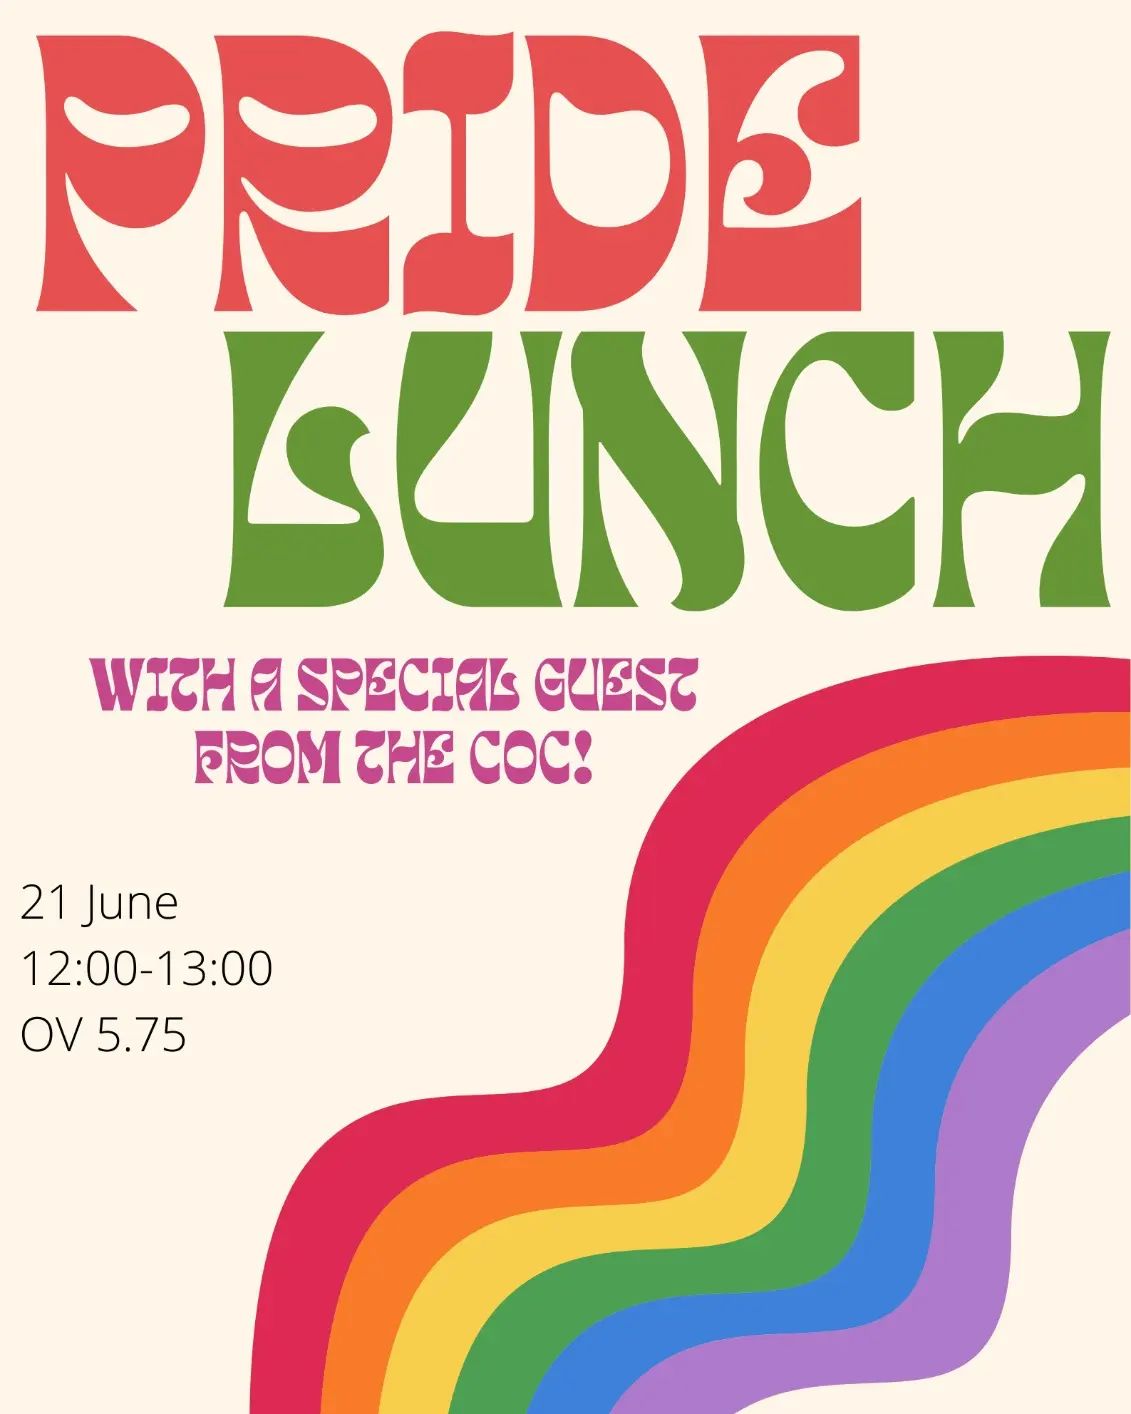 In regenboogkleuren gezet: Pride Lunch with a special guest from the COC! 21 juni 12.00-13.00 in OV 5.75.